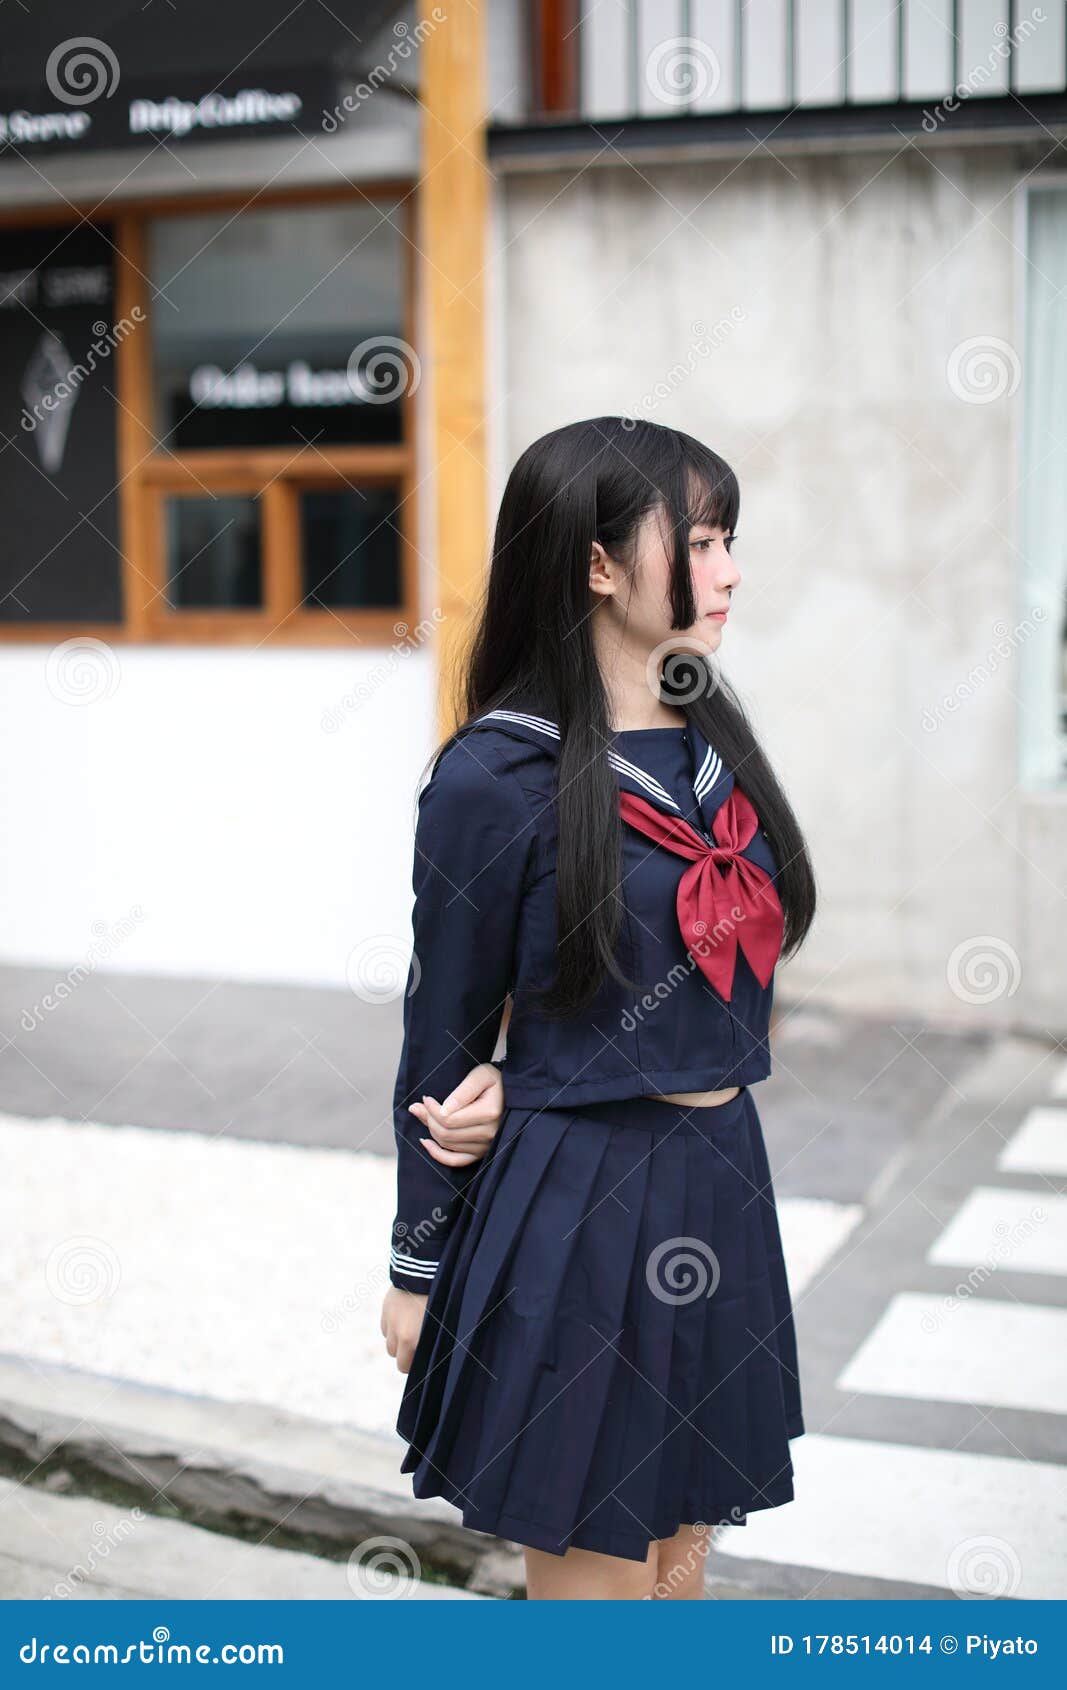 日本美女学生妹制服诱惑性感写真 第二辑_美女图片_mm4000图片大全